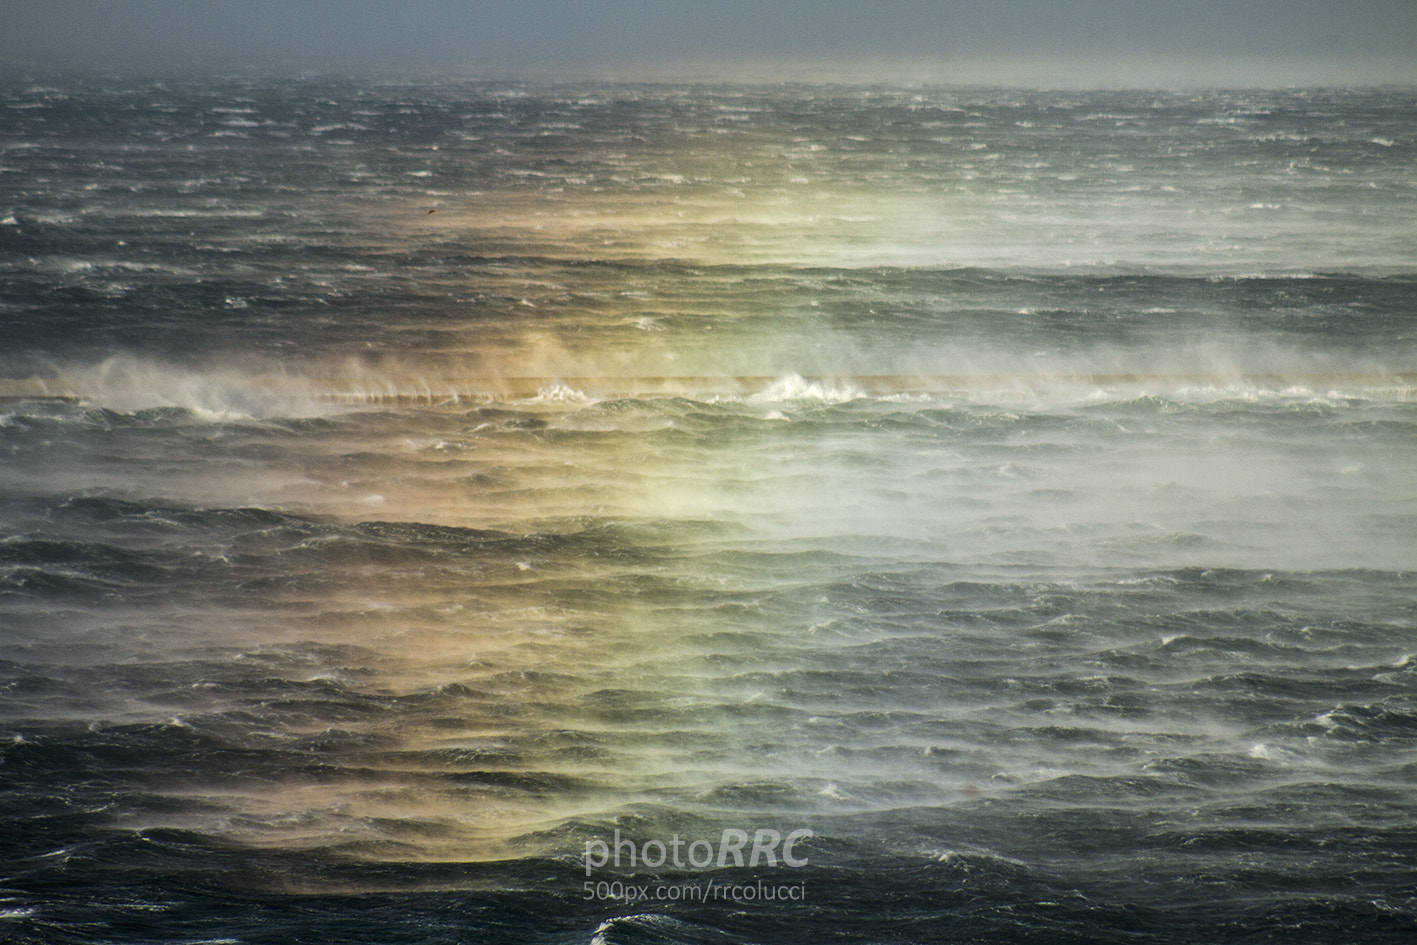 Canon EOS 7D + EF75-300mm f/4-5.6 sample photo. Sea-spray rainbow photography